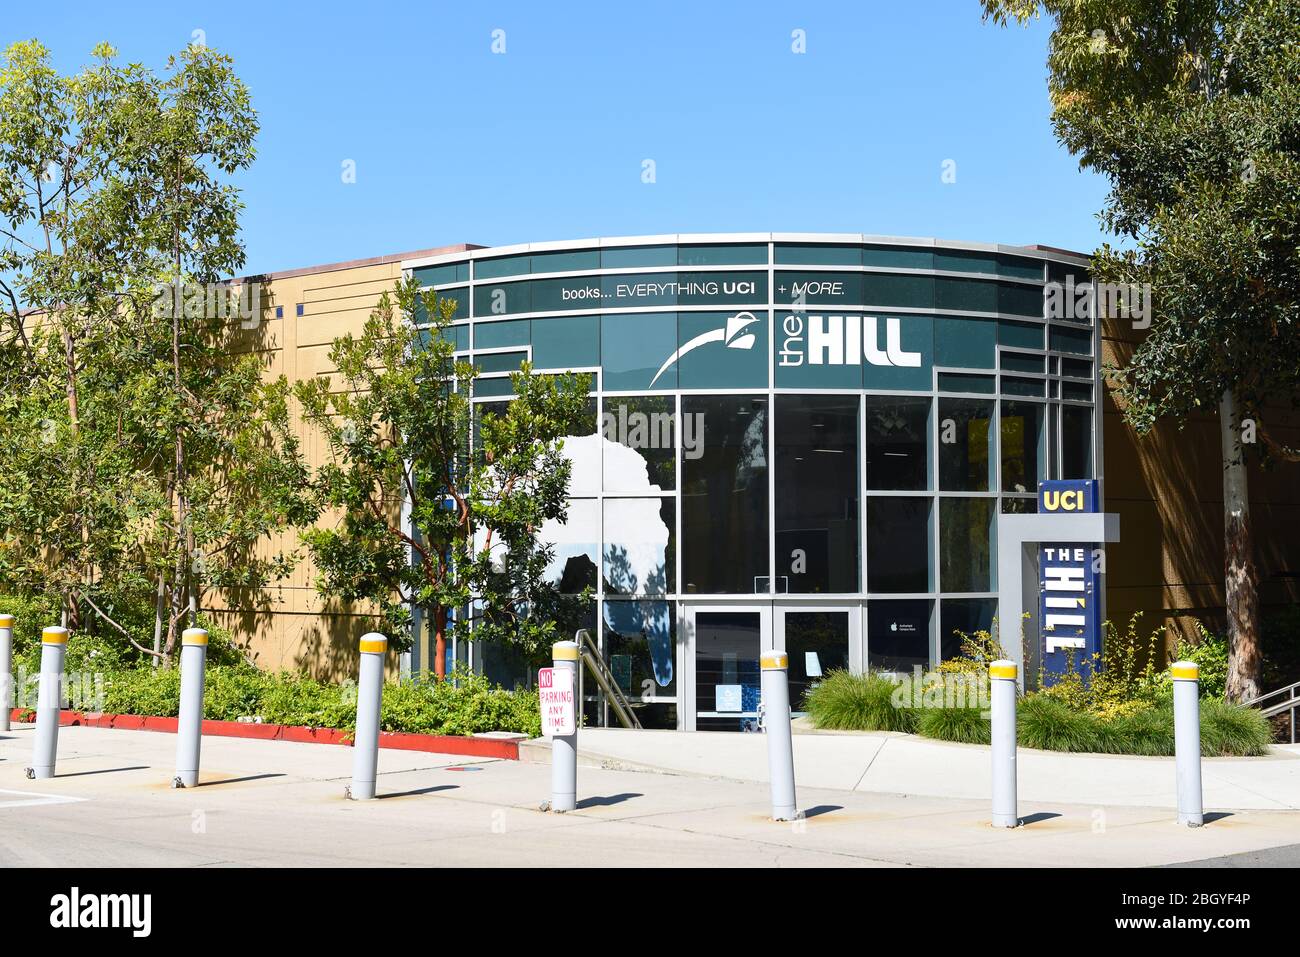 IRVINE, KALIFORNIEN - 22. APRIL 2020: The Hill an der University of California Irvine, UCI, ist der Außenposten für Bücher, Snacks, Schulbedarf und scho Stockfoto